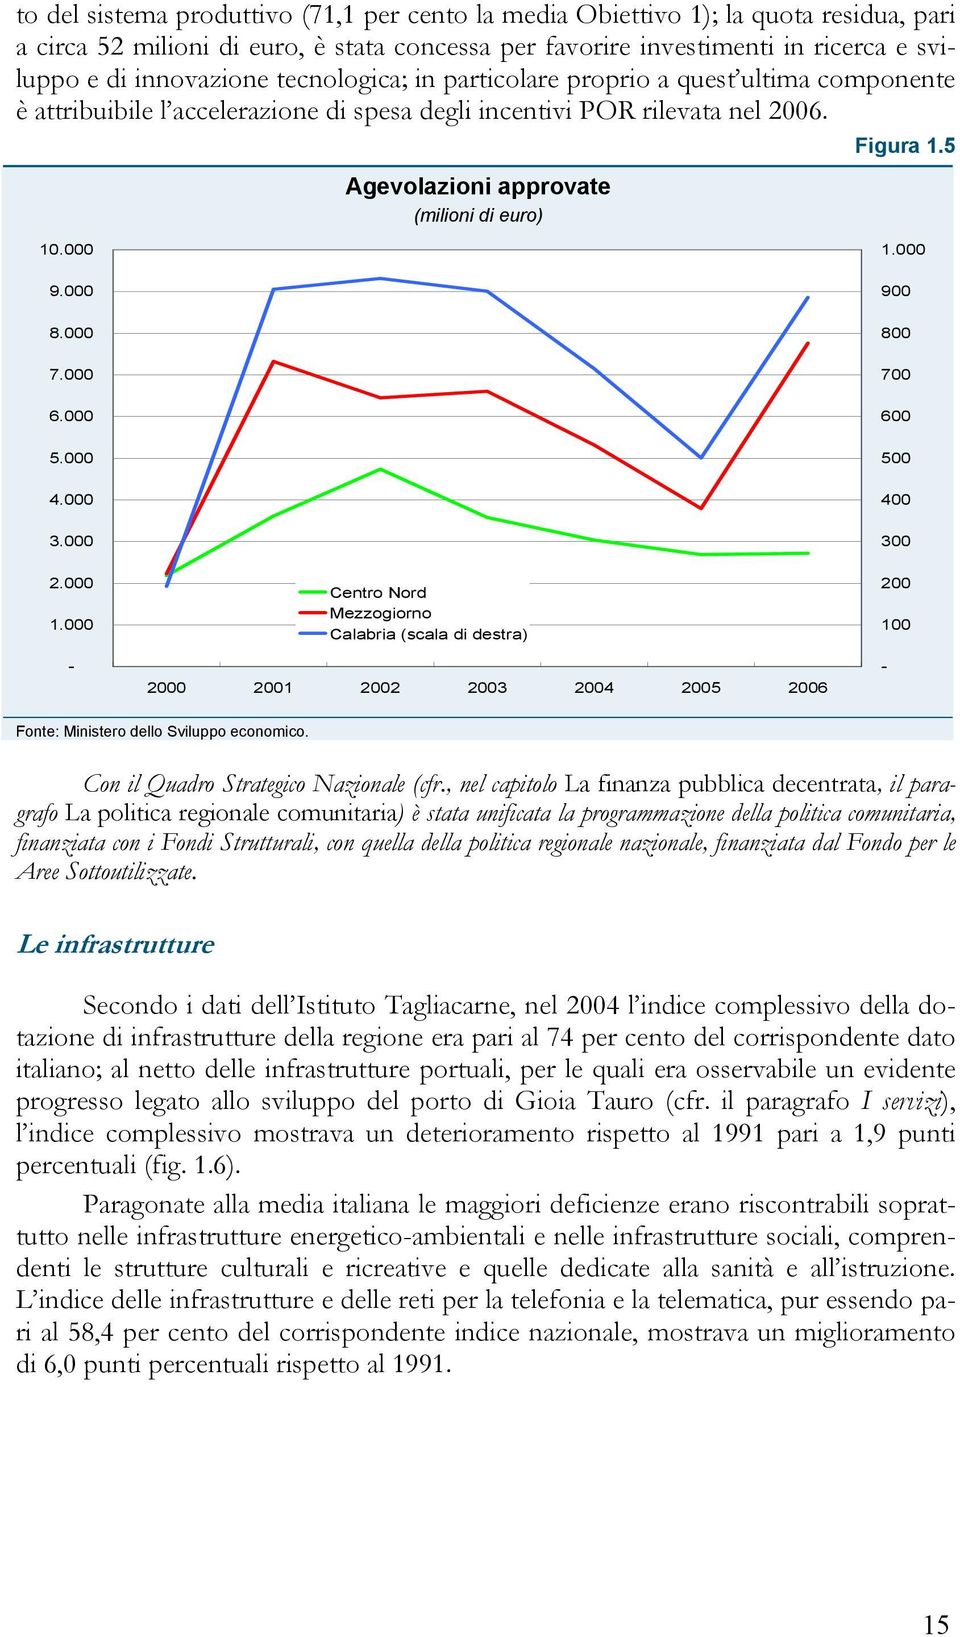 000 9.000 8.000 7.000 6.000 5.000 4.000 3.000 2.000 1.000 - Centro Nord Mezzogiorno Calabria (scala di destra) 2000 2001 2002 2003 2004 2005 2006 1.